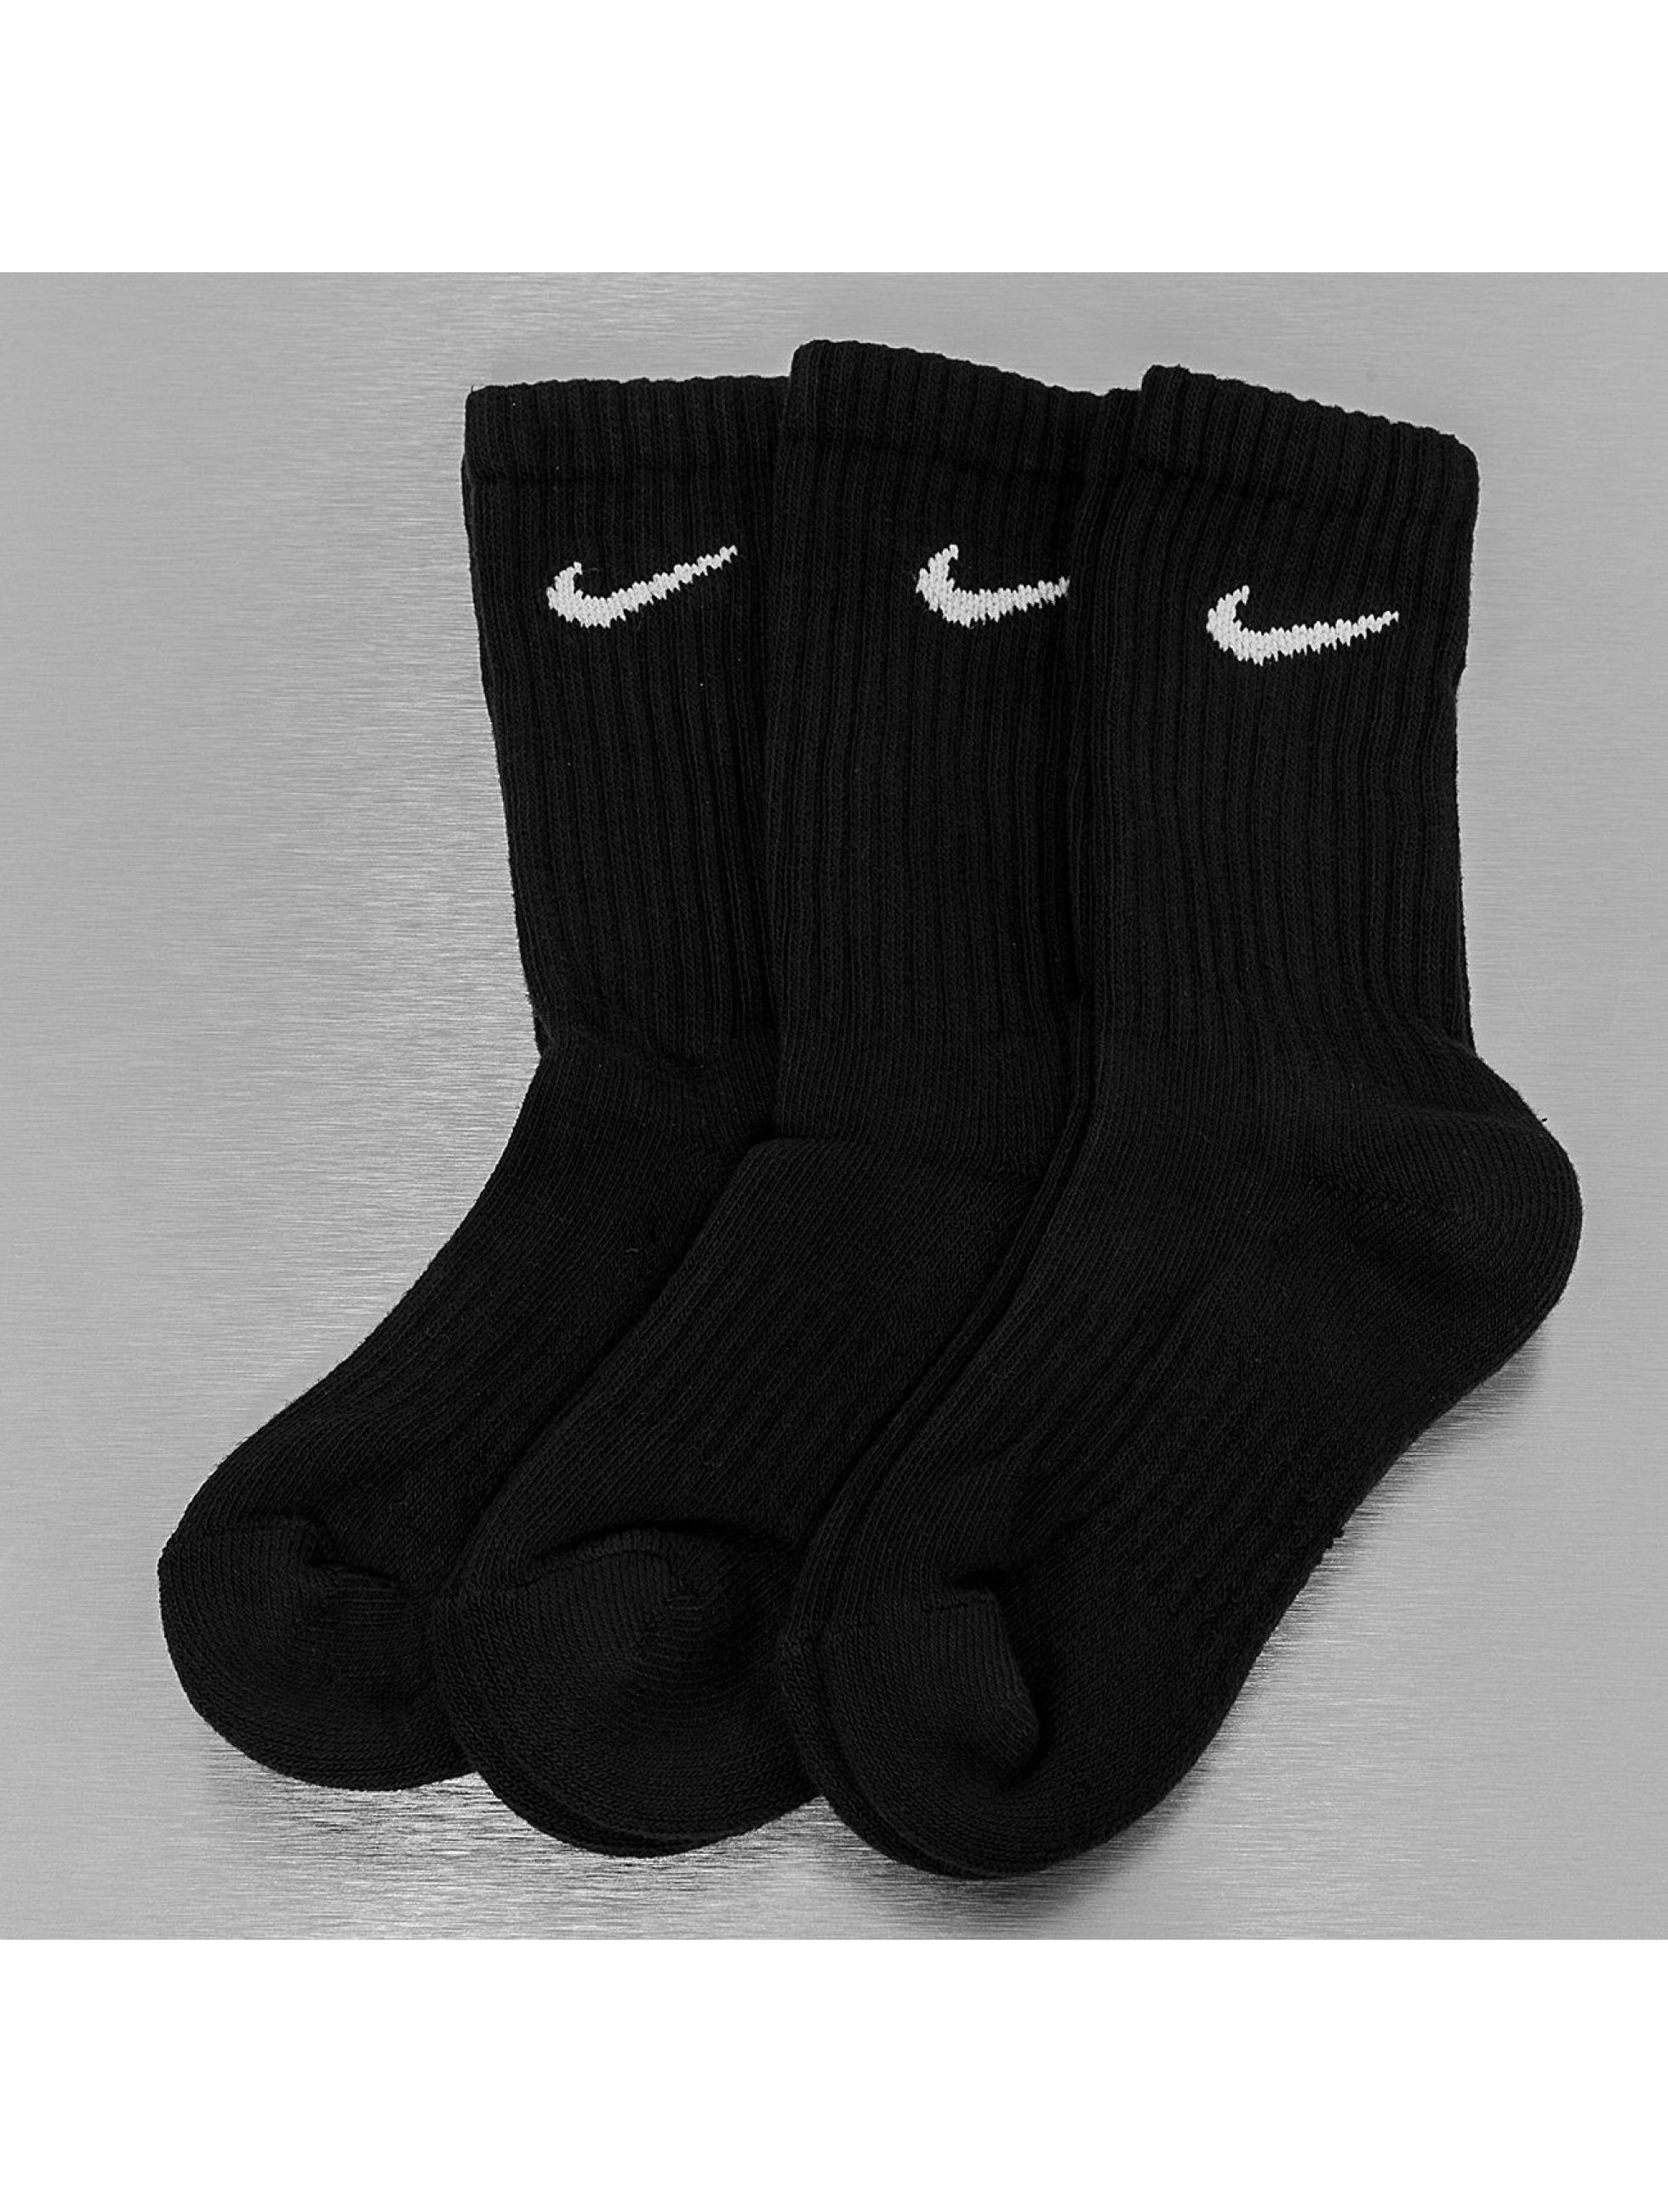 Socken Value Cotton Crew in schwarz